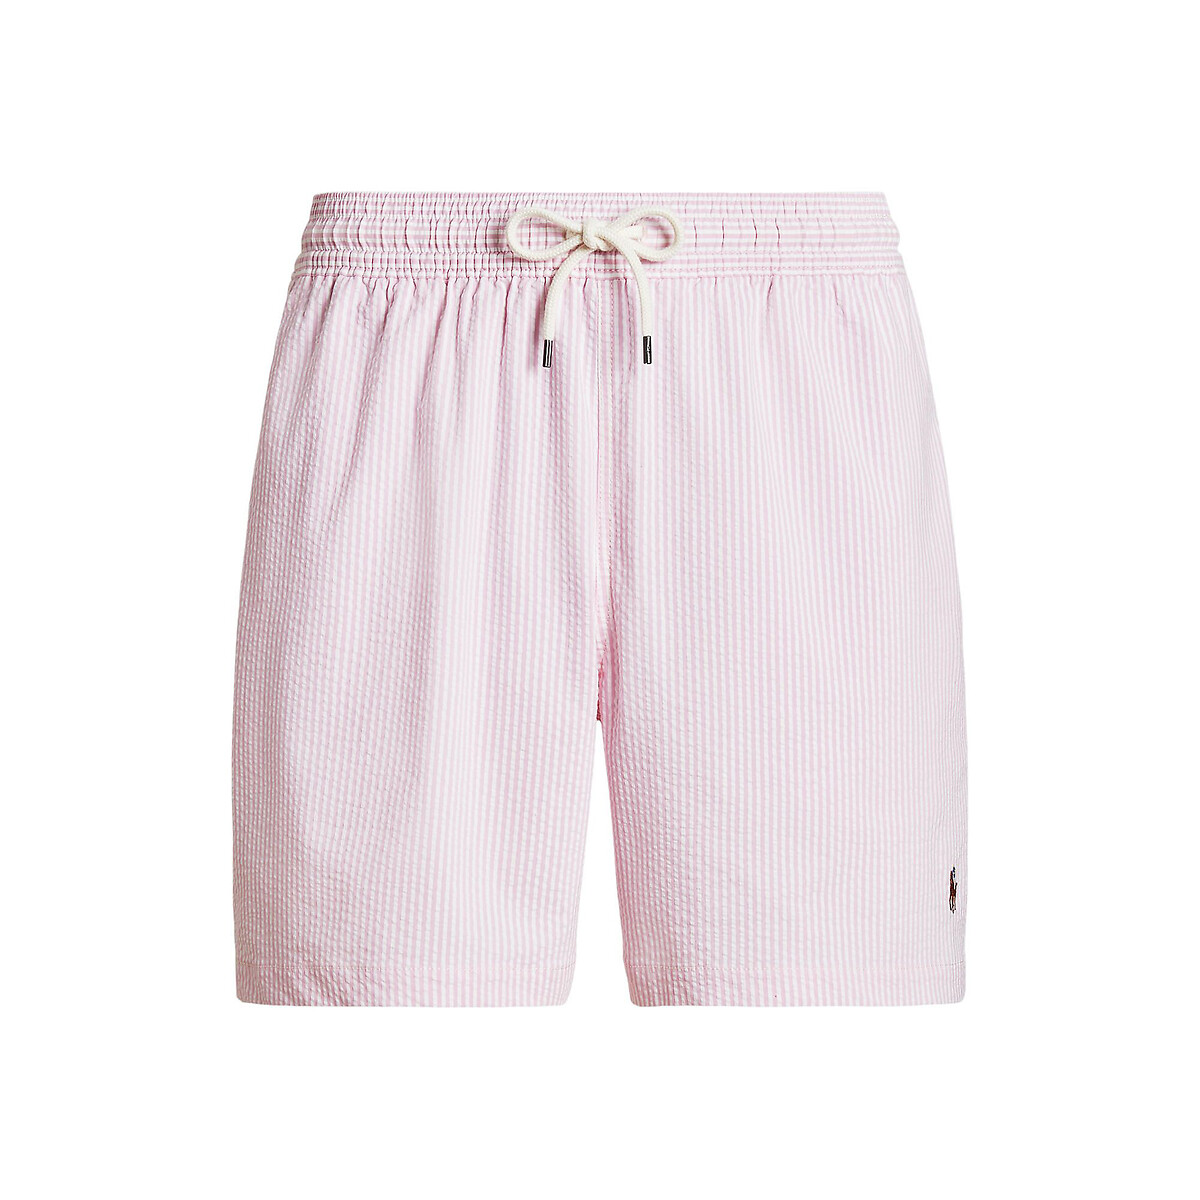 Шорты Пляжные из легкой полосатой ткани с вышитым логотипом XL розовый LaRedoute, размер XL - фото 4